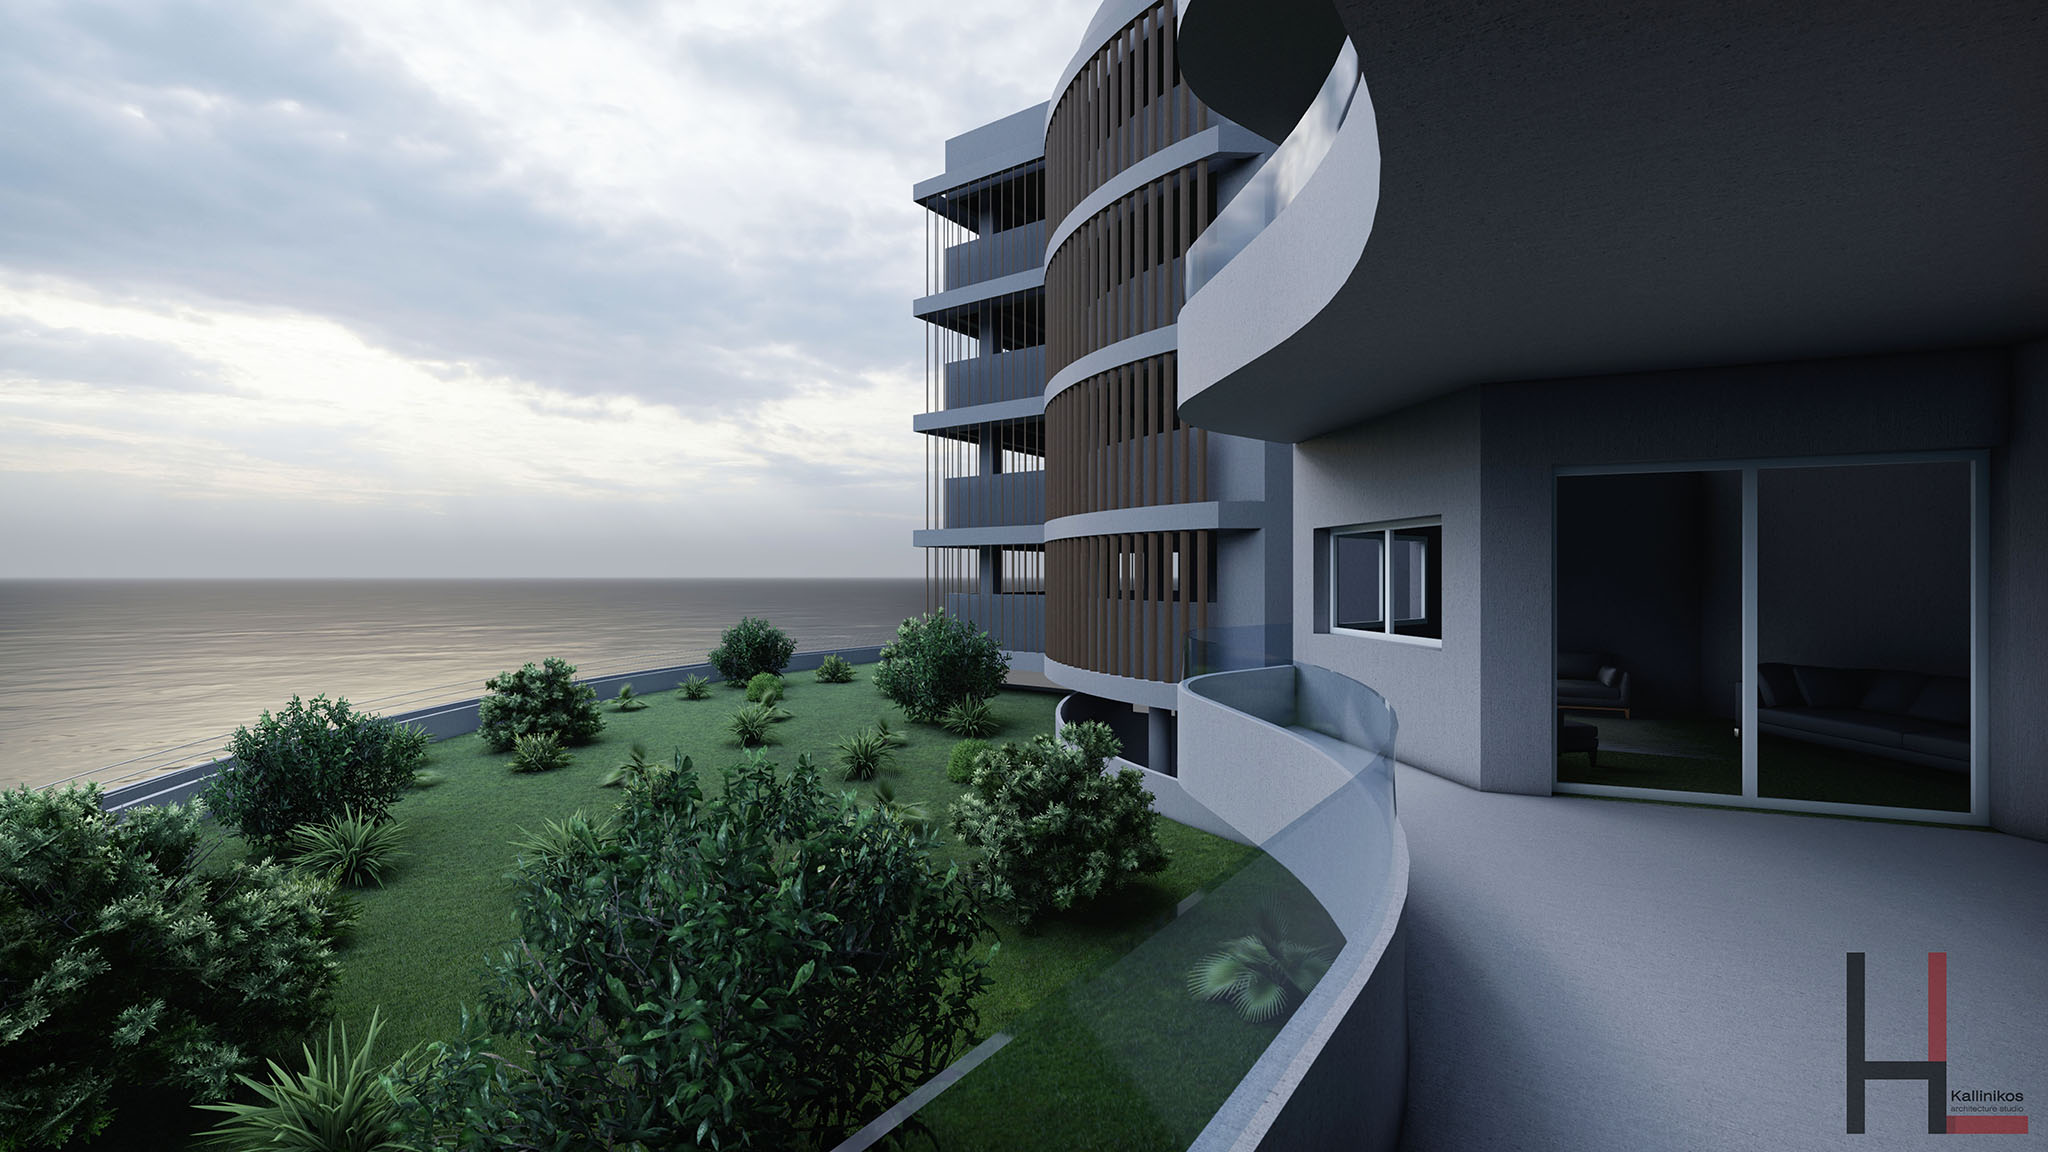 Seaside Apartments Limassol Lemesos Cyprus Kallinikos Architecture Design